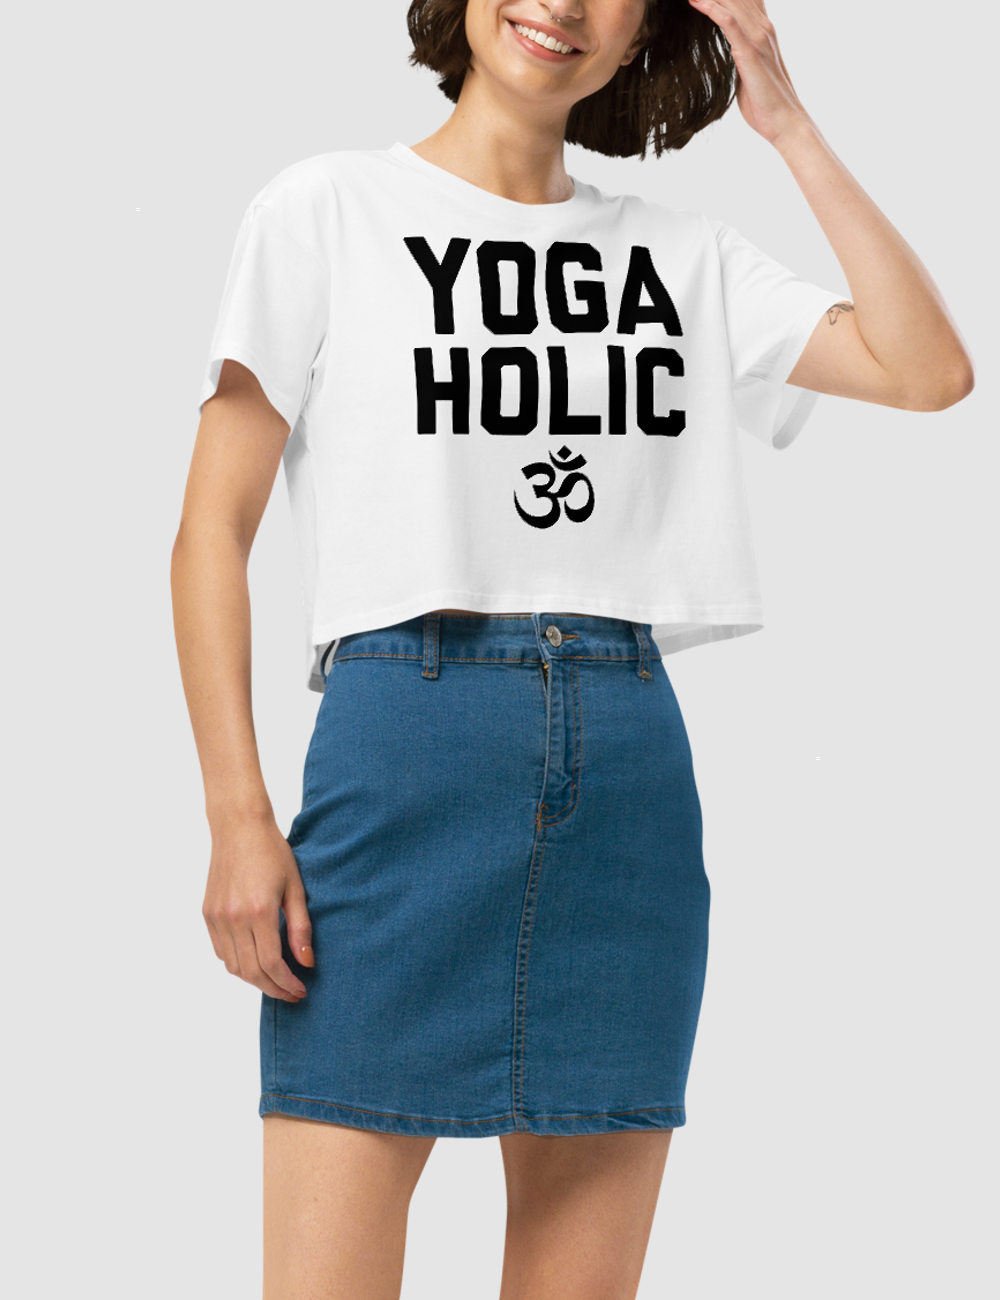 Yogaholic Women's Relaxed Crop Top T-Shirt OniTakai